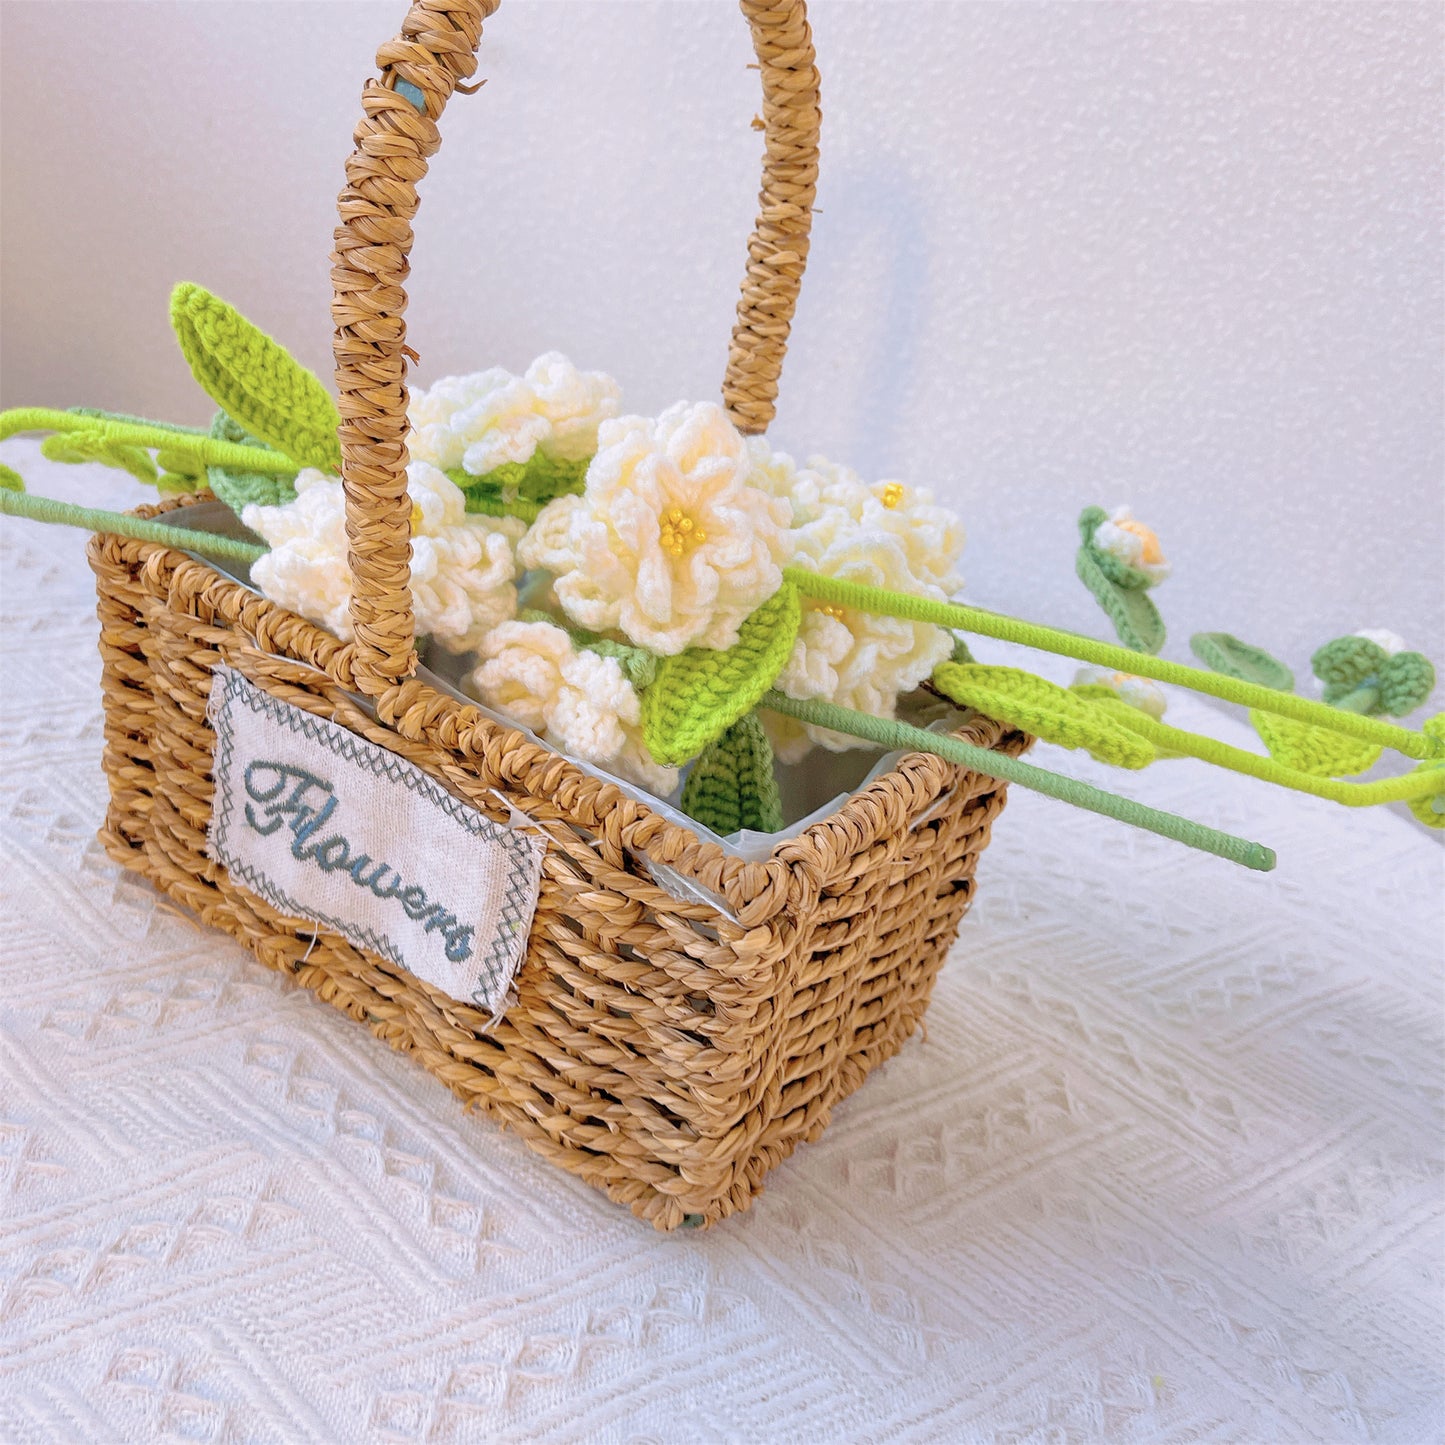 Beauté élégante : piquet de gardénias au crochet fabriqué à la main pour une décoration de jardin sophistiquée